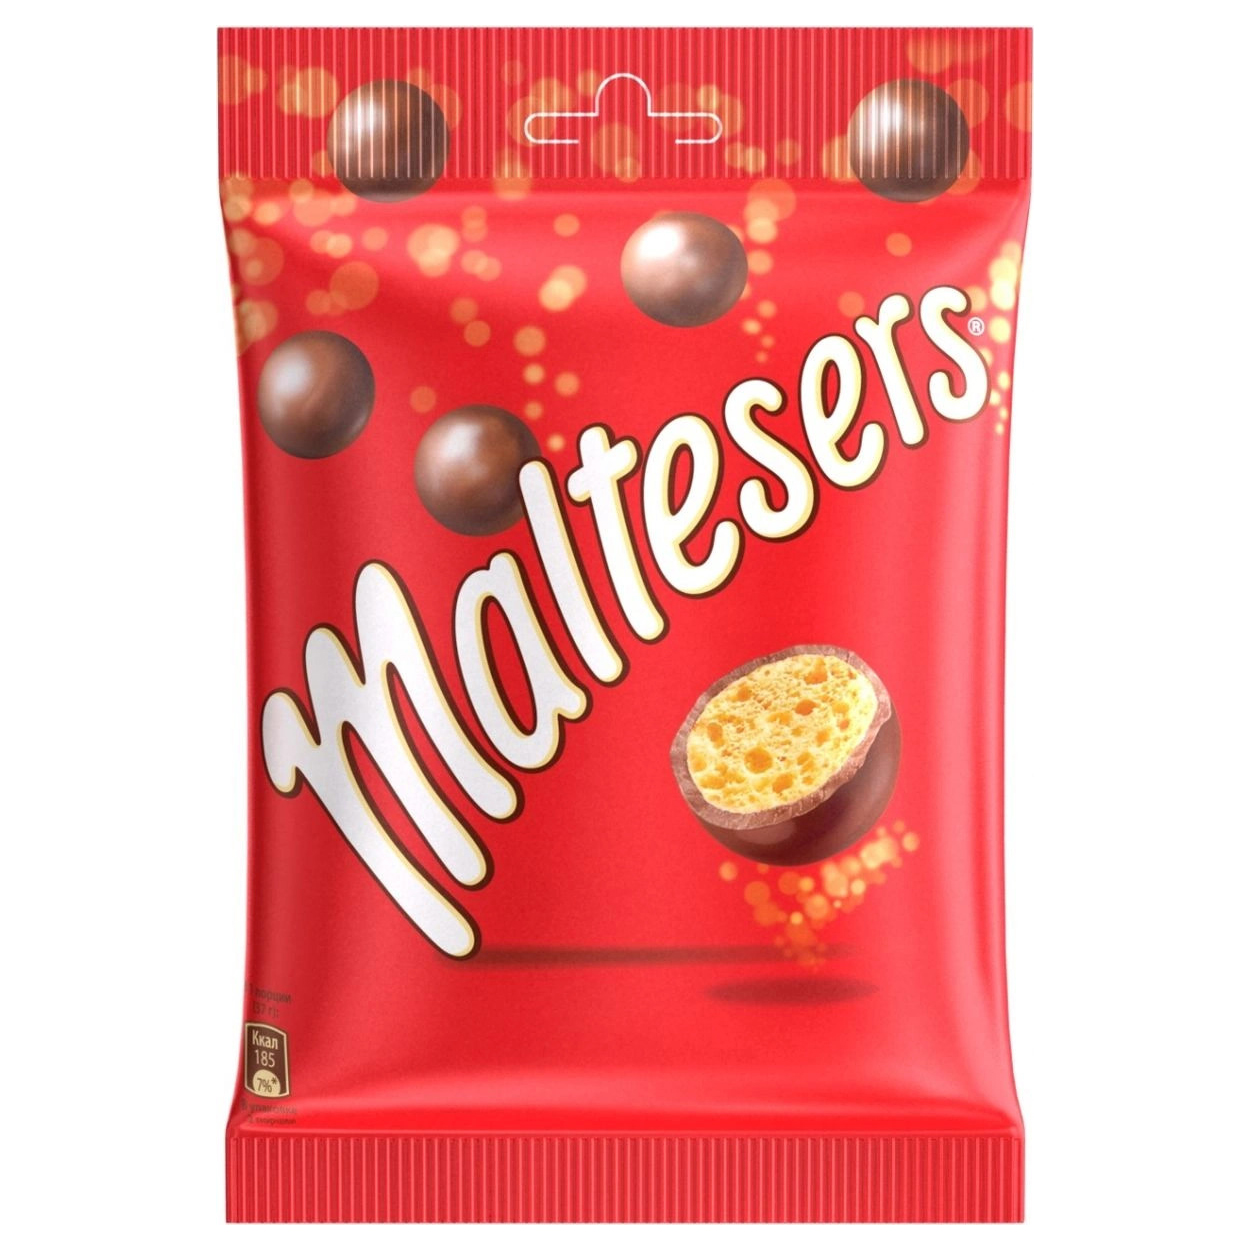 Хрустящие шоколадные шарики. Конфеты шоколадные шарики Мальтизерс. Конфеты Maltesers шоколадные шарики. Шоколадное драже Мальтизерс. Конфеты драже Maltesers.